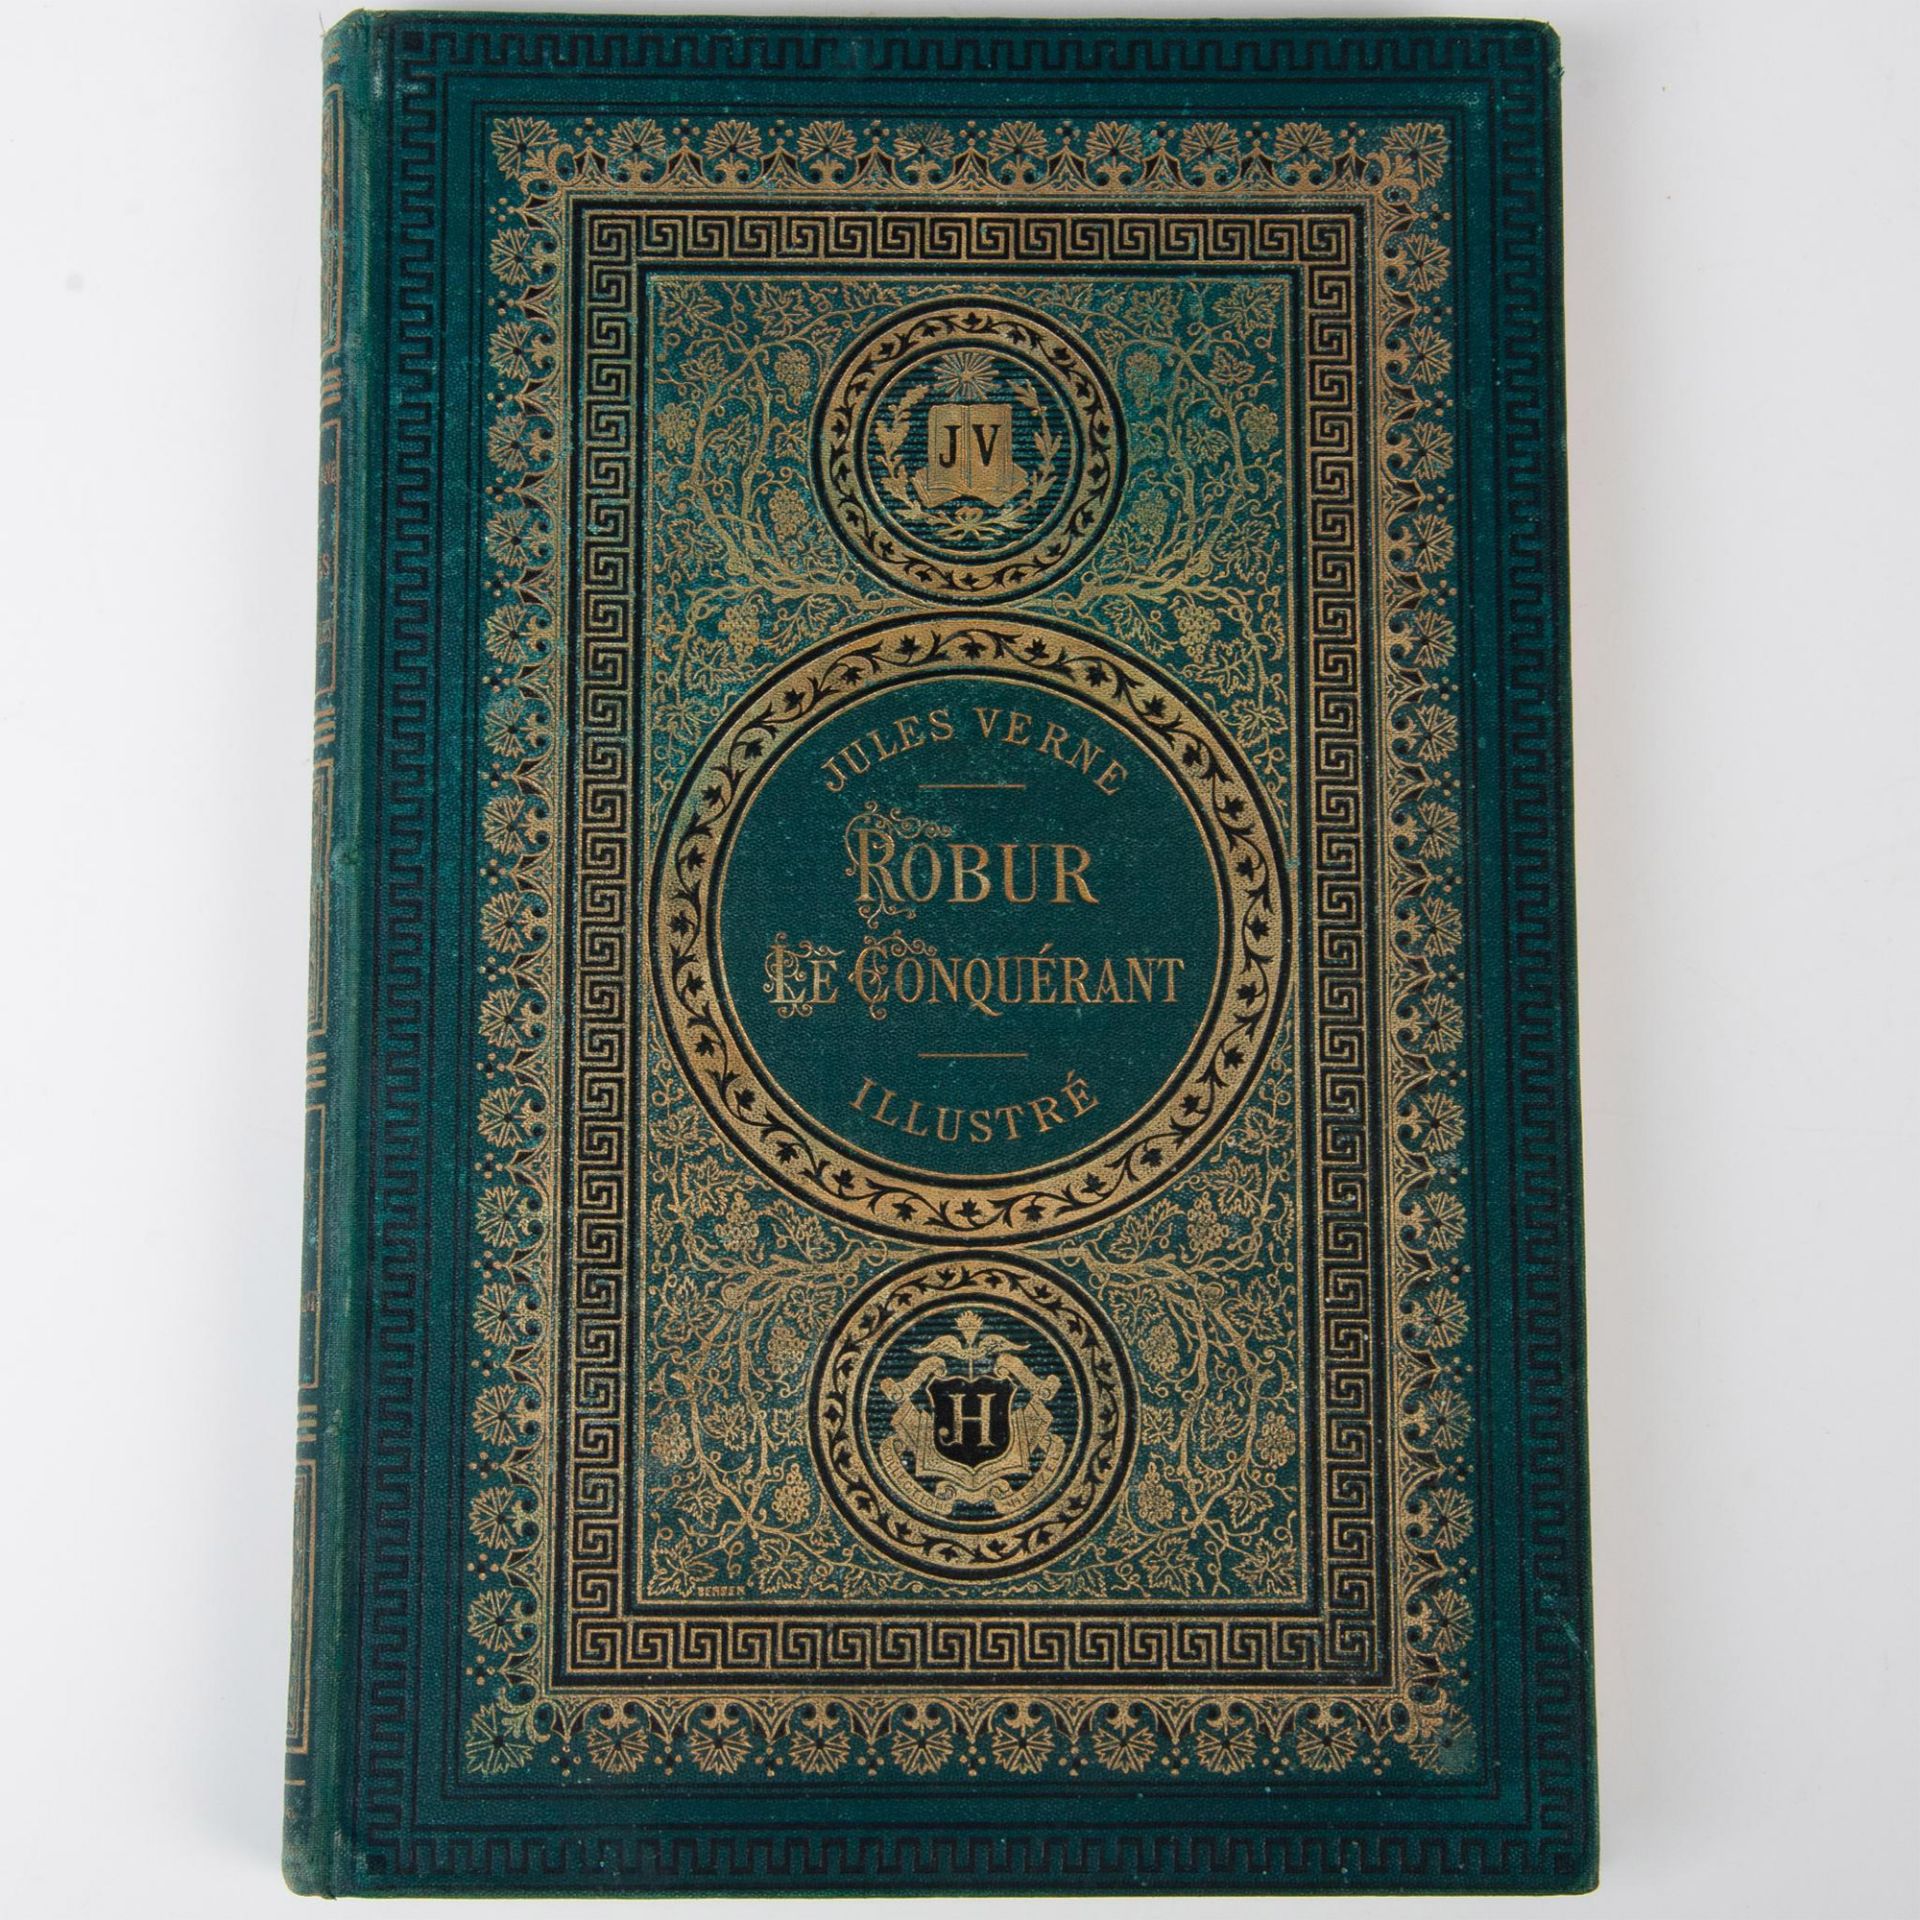 Jules Verne, Robur le Conquerant, JV Aux Initiales, Green